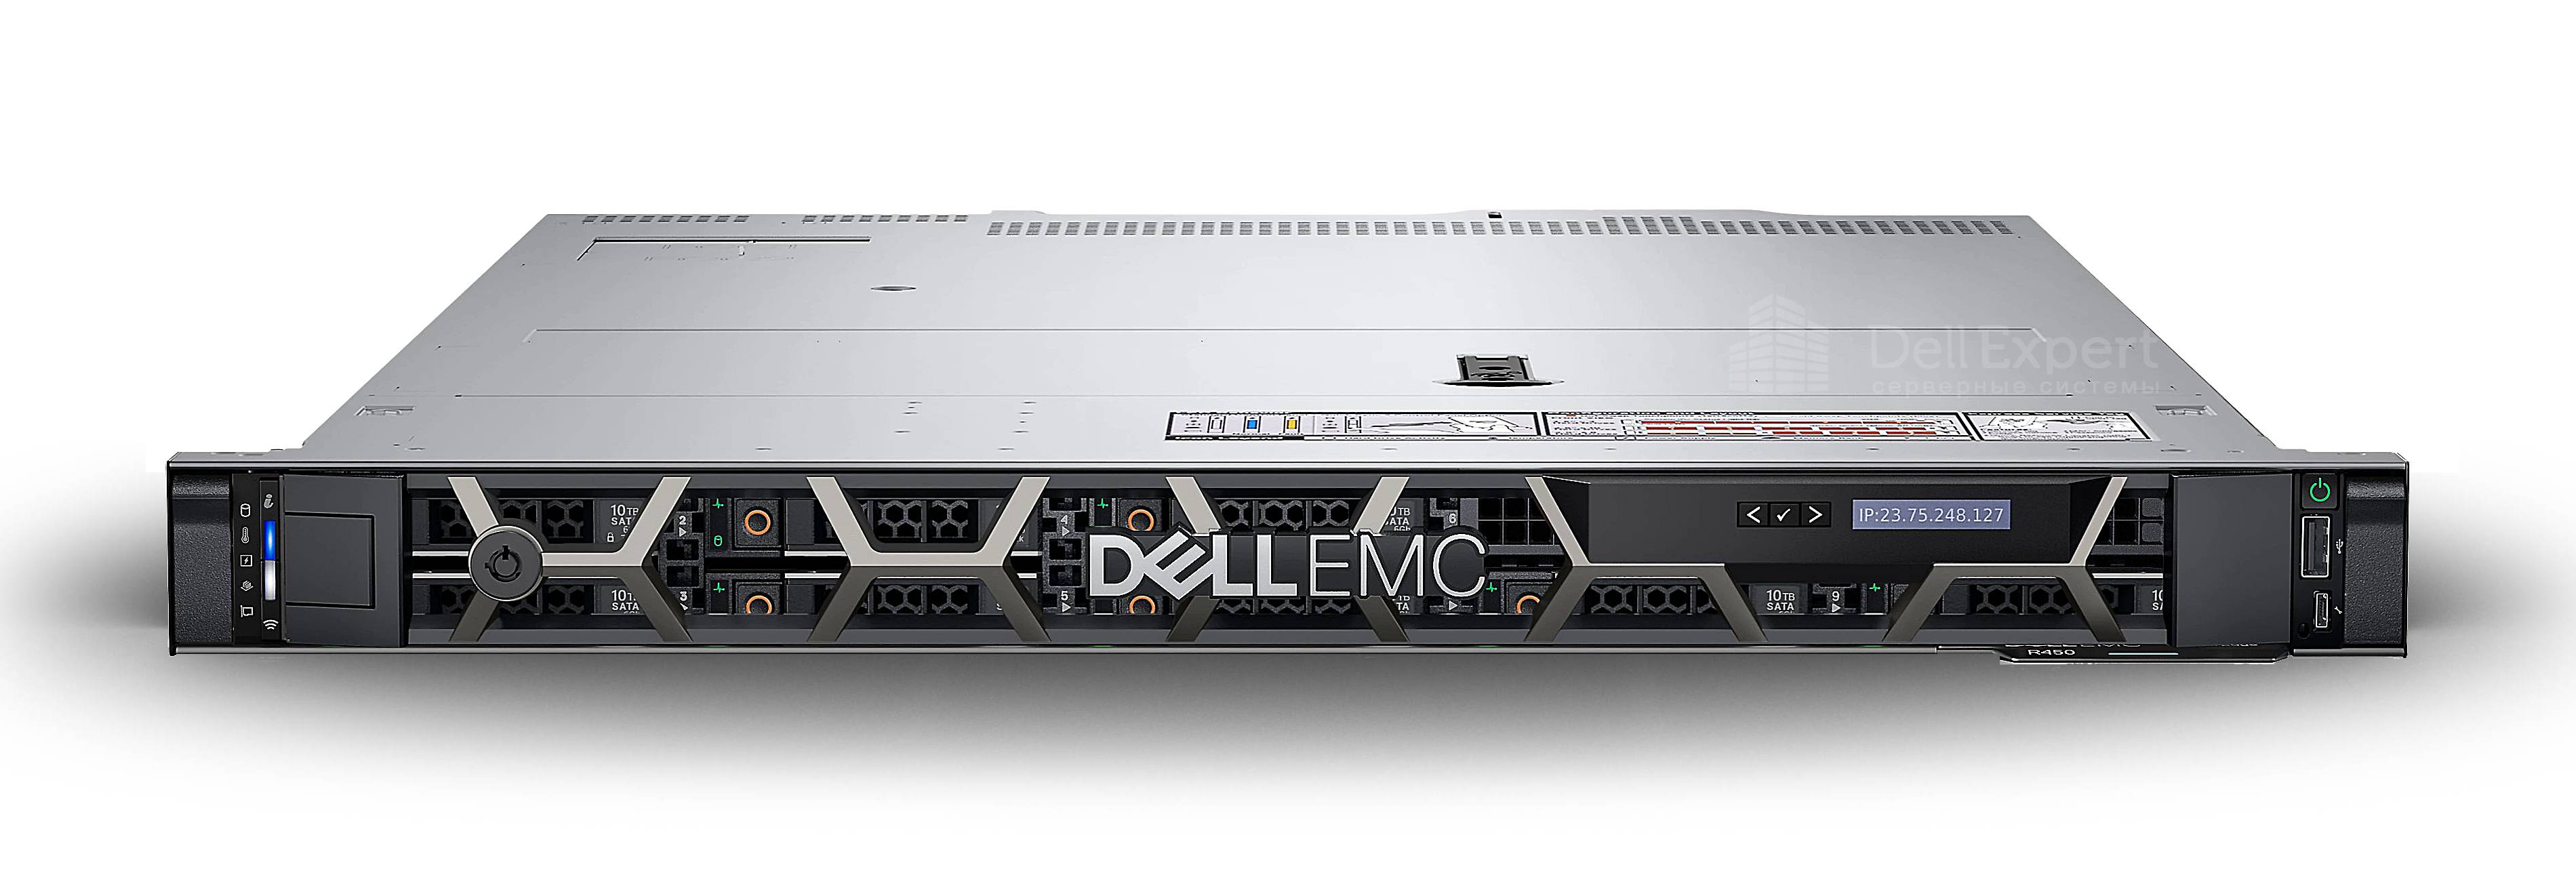 server Dell EMC PowerEdge R450